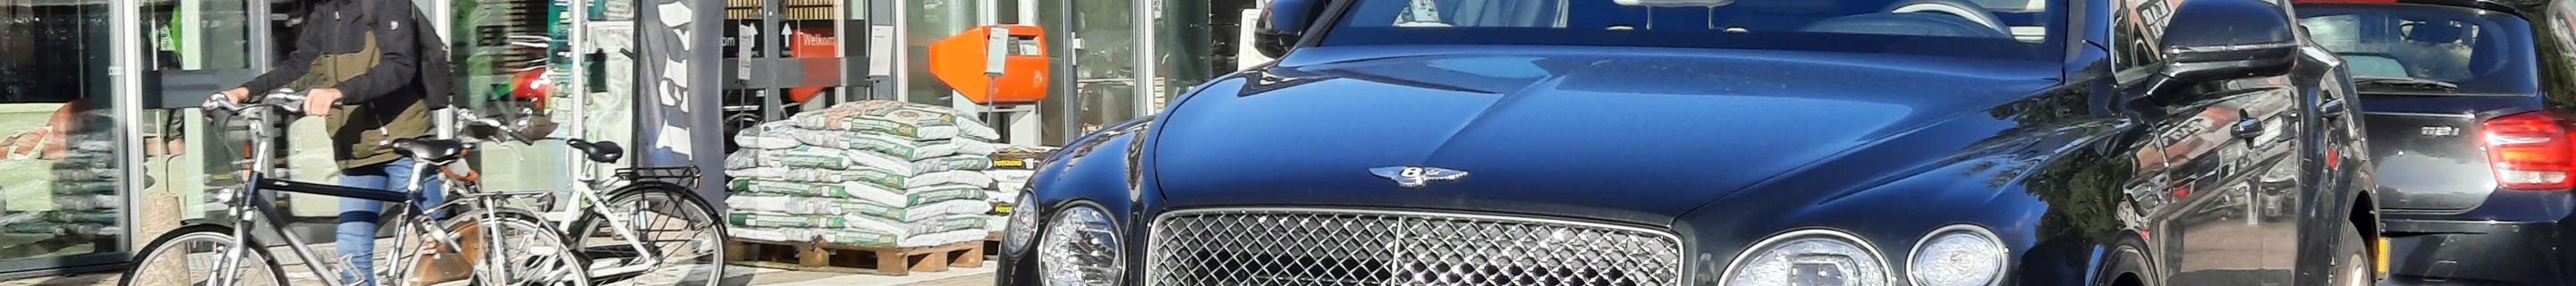 Bentley Bentayga Hybrid Odyssean Edition